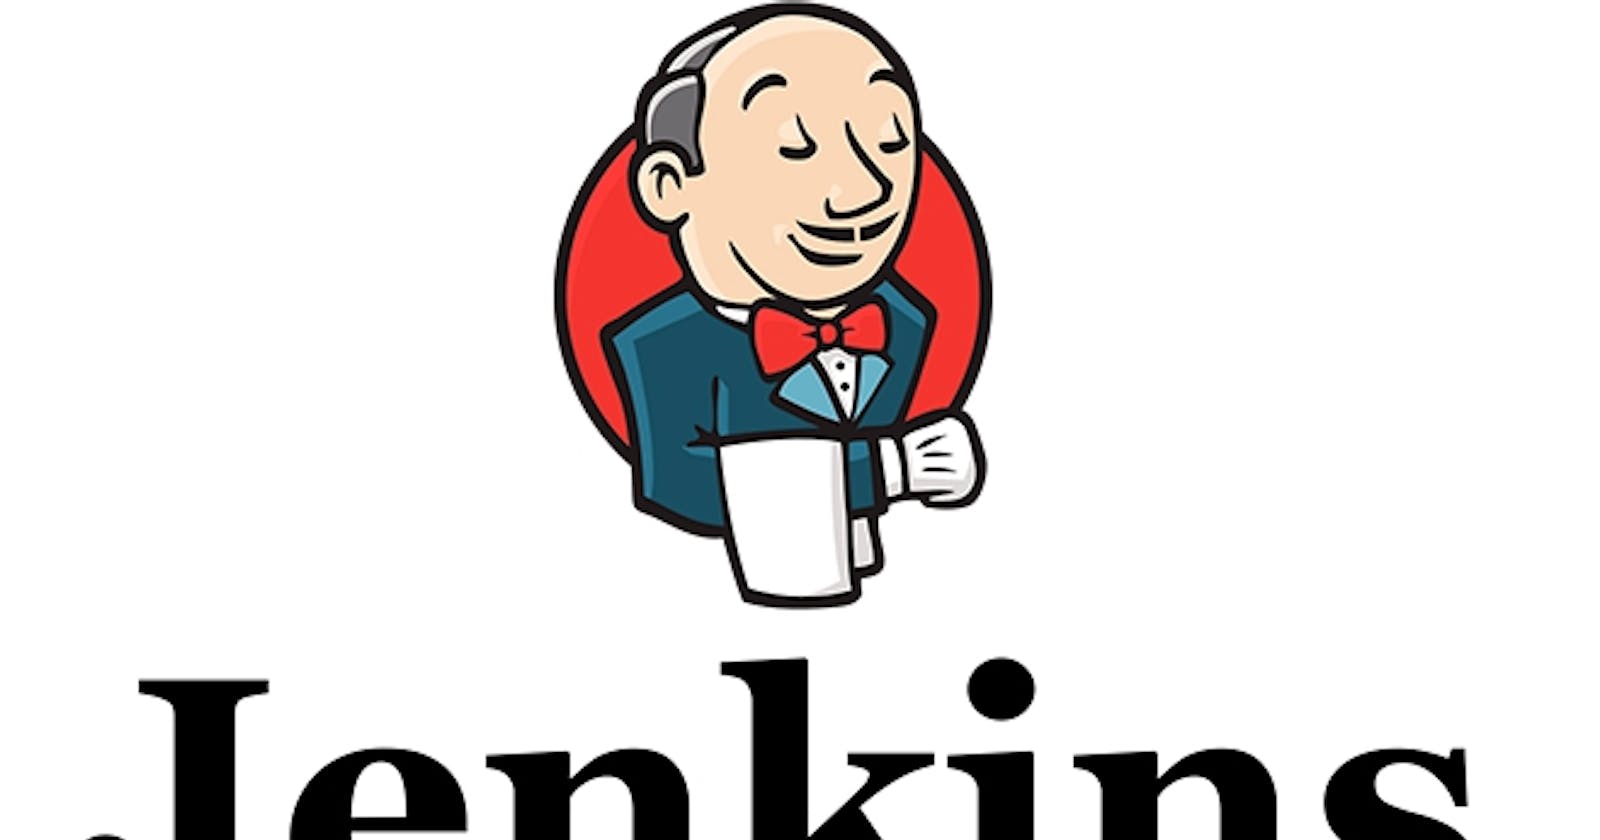 Process to install Jenkins in Ubuntu